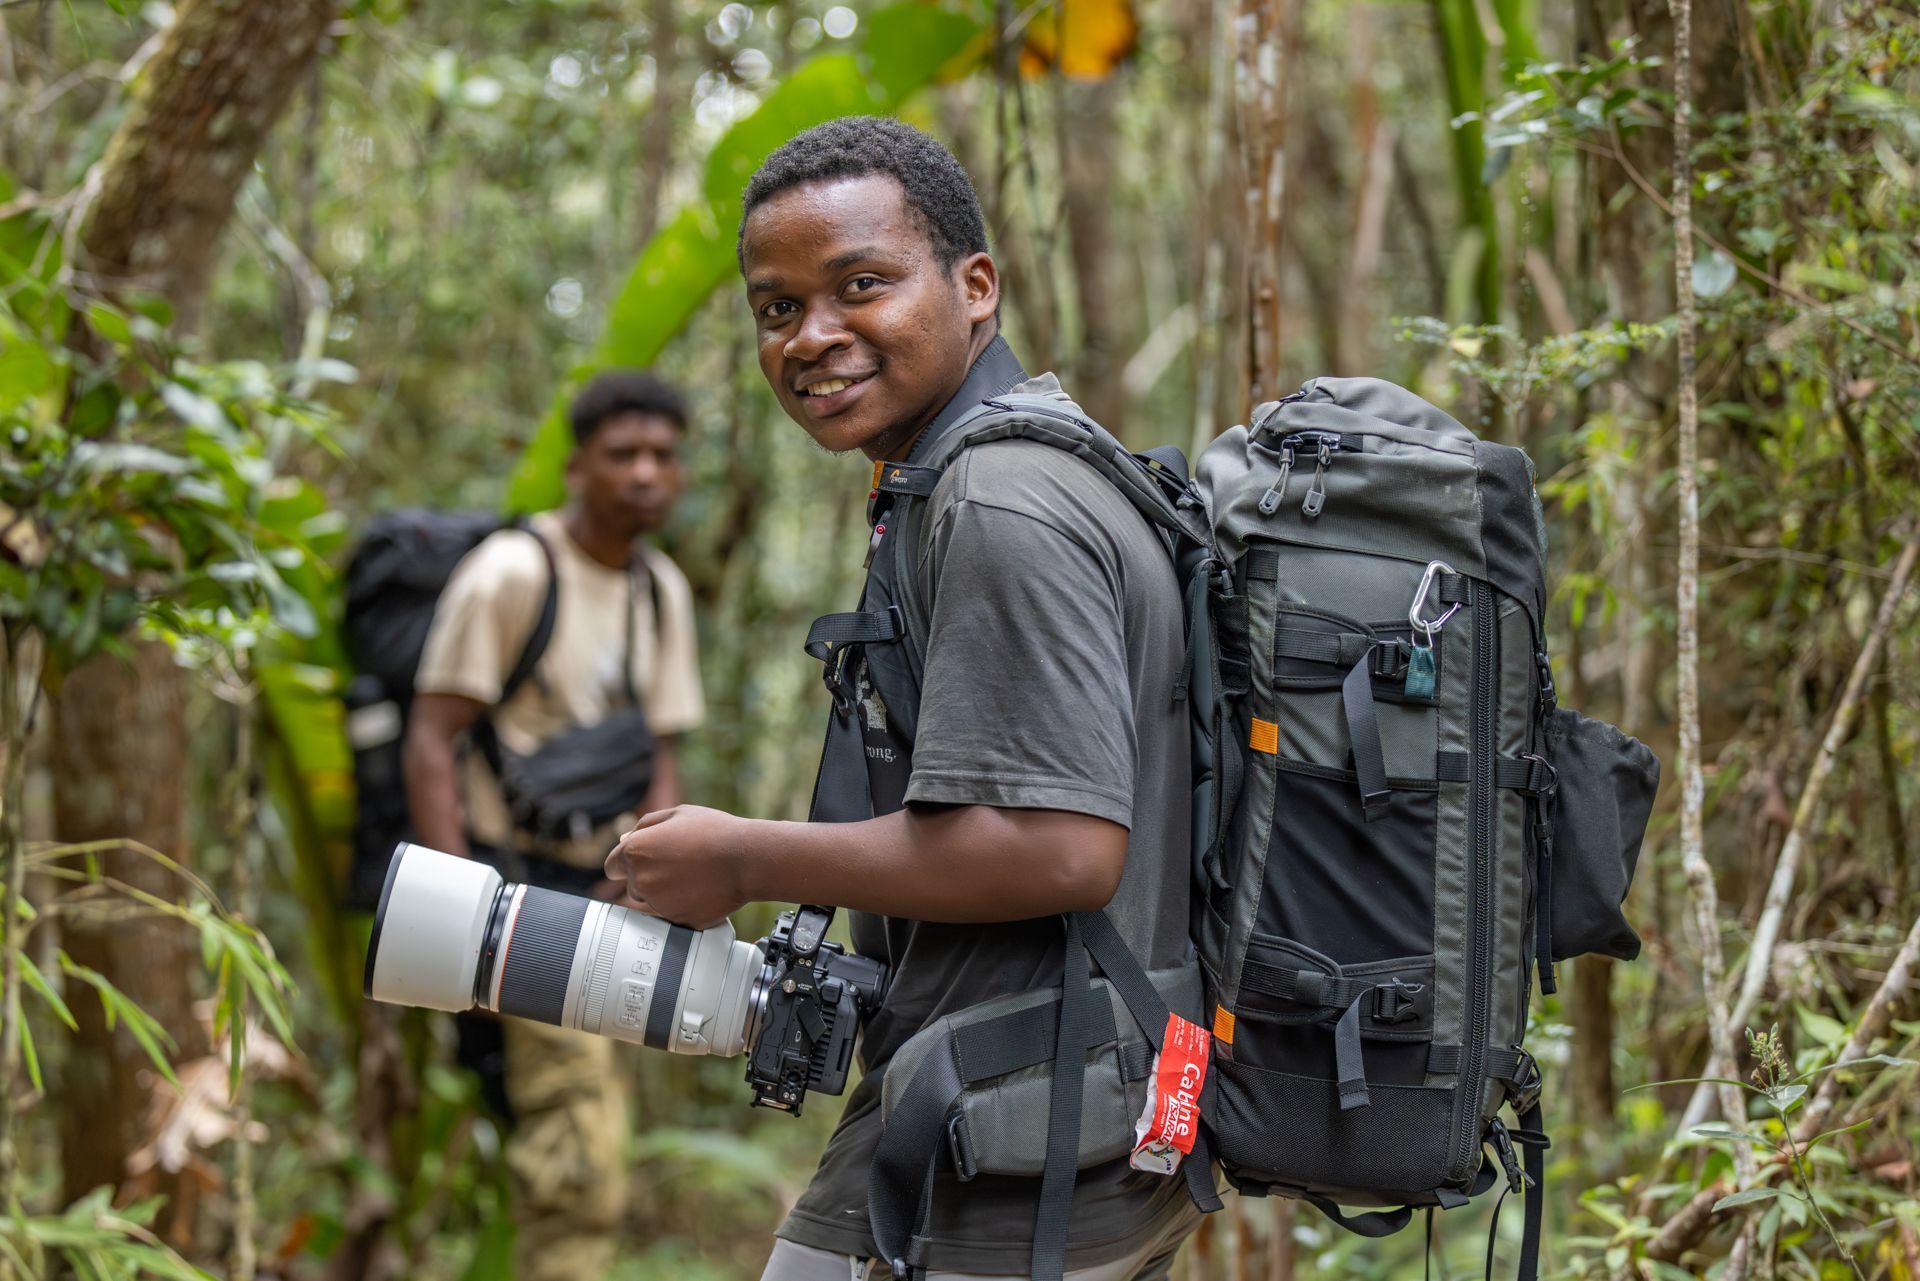 Herizo Randrianandrasana prepares to photograph indri lemurs!